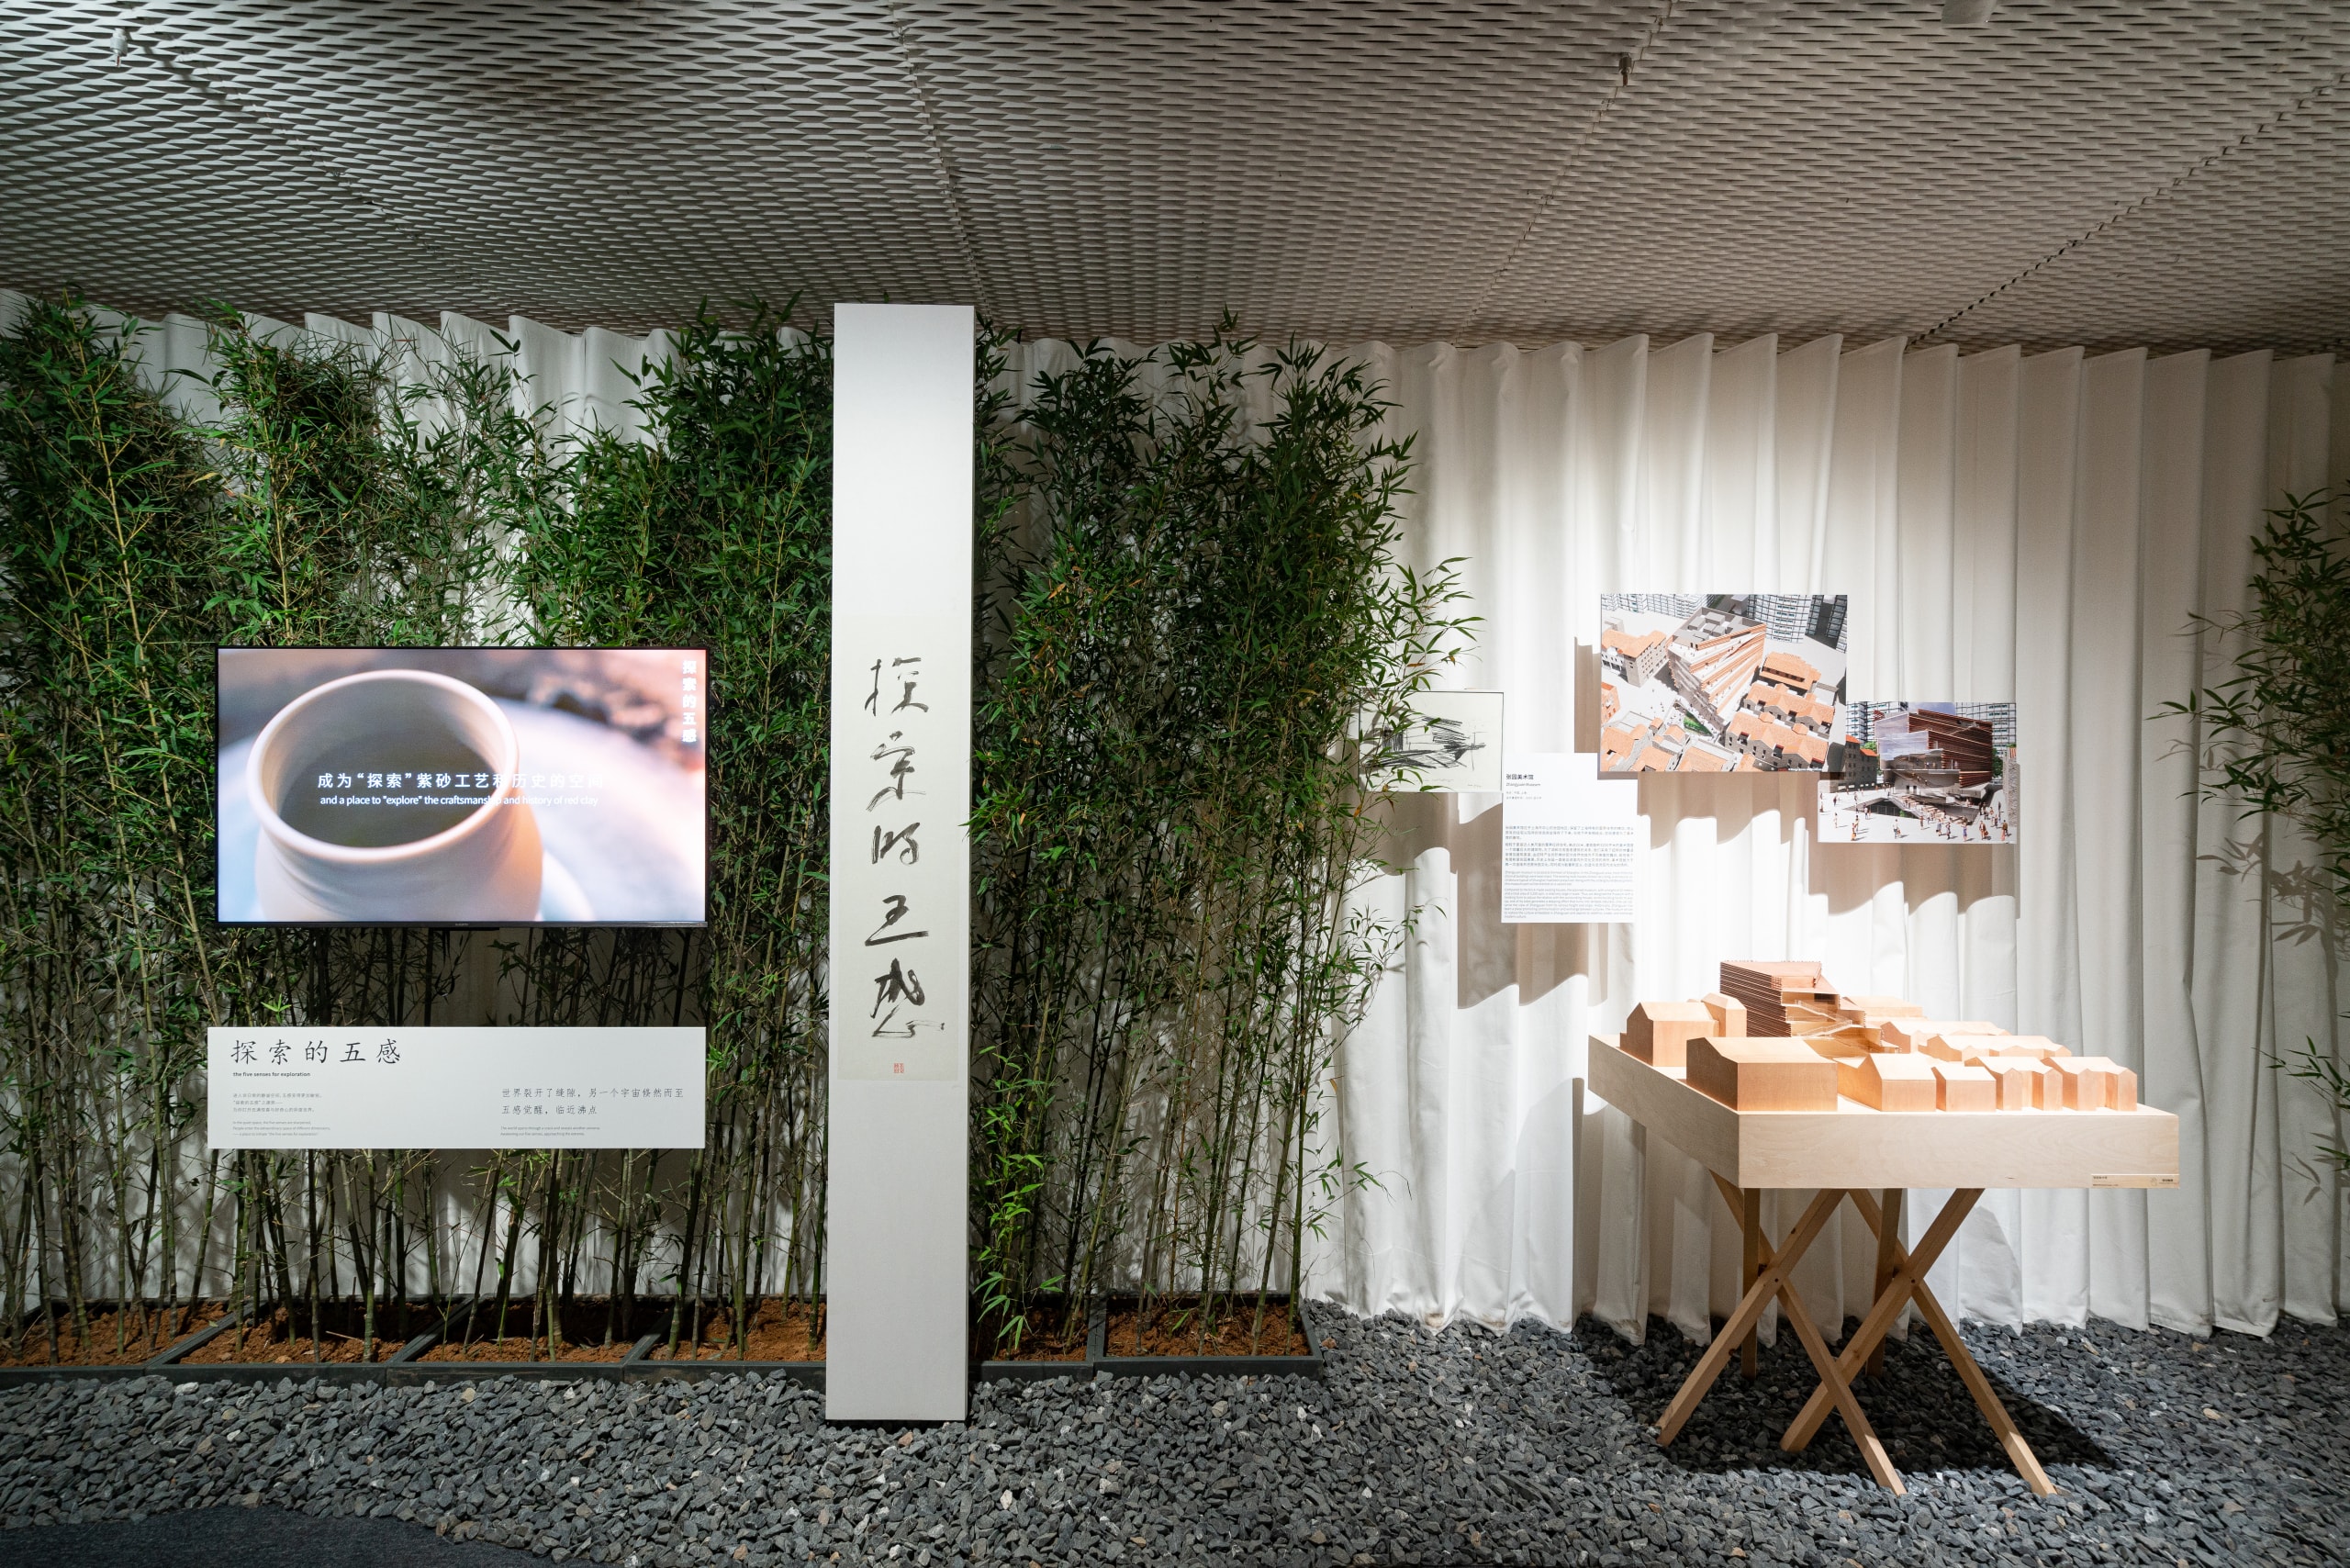 走进日本建筑师隈研吾上海个展「五感的建筑」